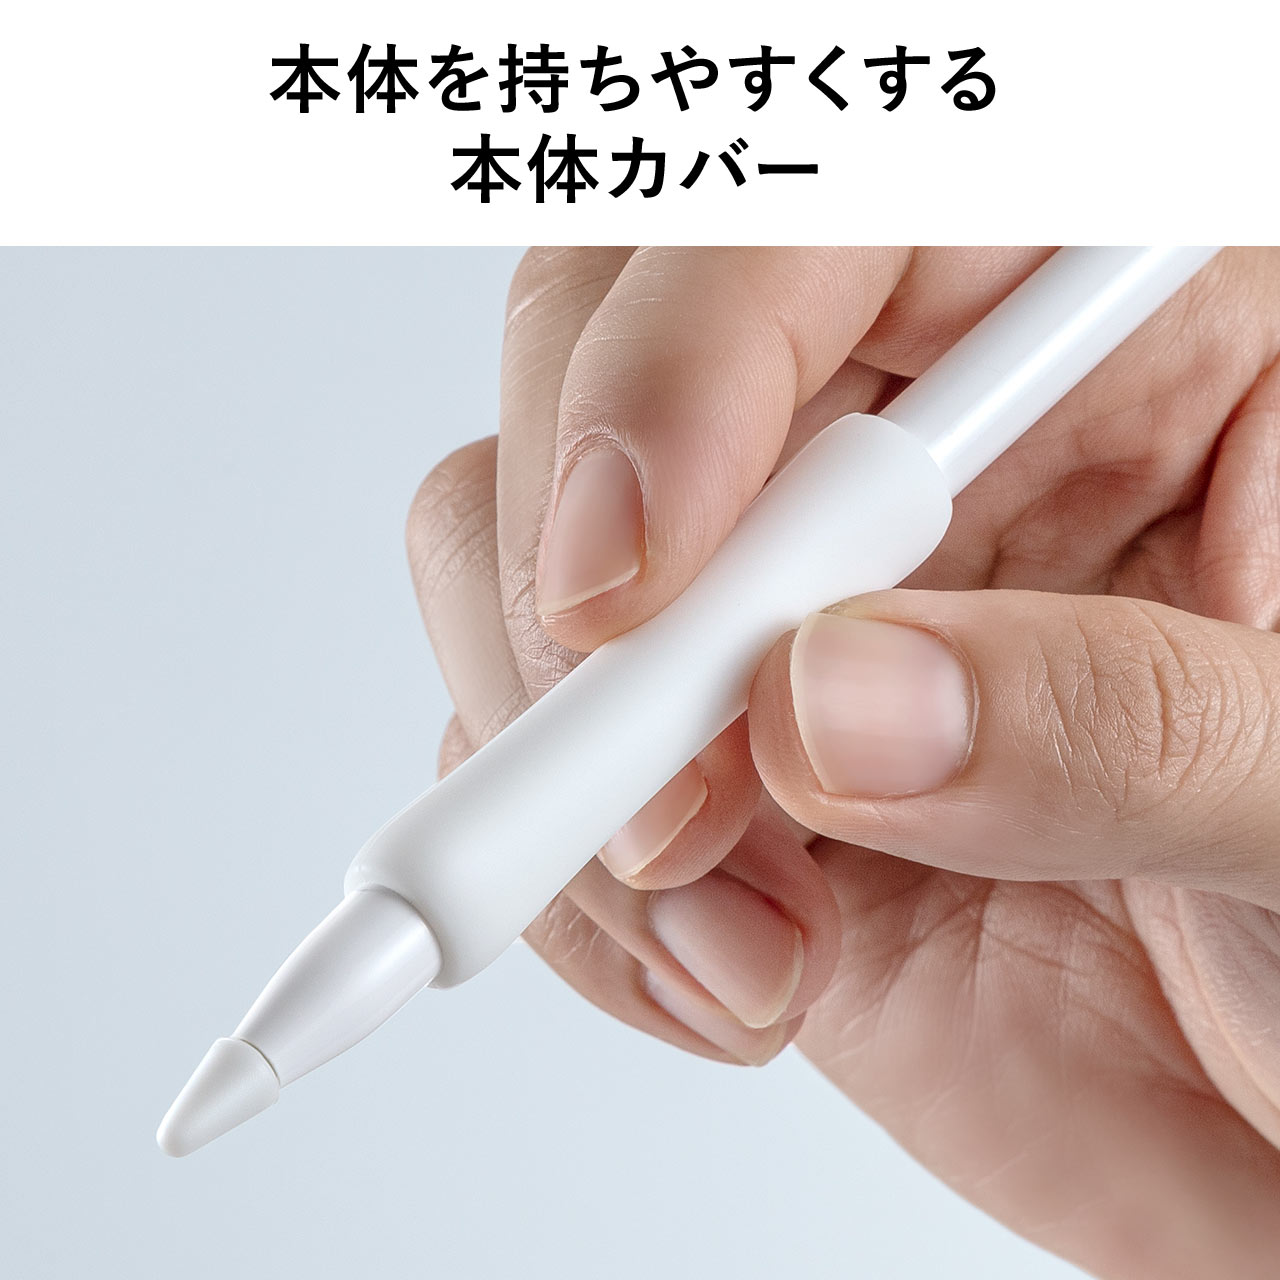 Apple Pencil 保護カバーセット 第1世代用 アップルペンシル 専用 iPad 